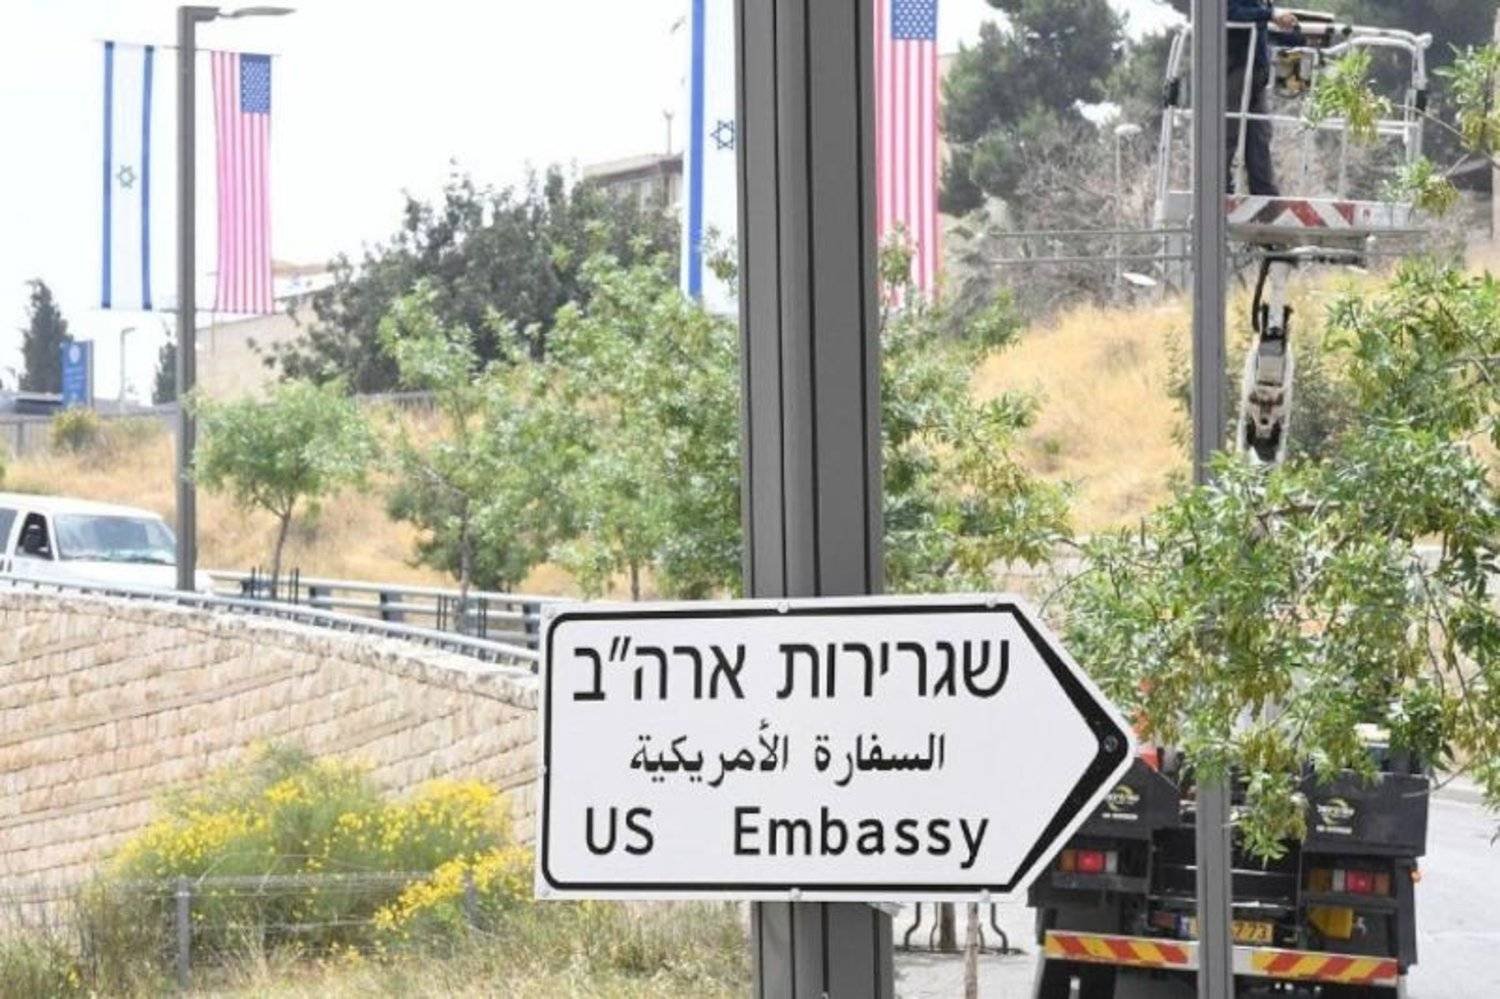 السفارة الأميركية في إسرائيل توجه نداءً لموظفيها وعائلاتهم بتقليل التنقلات